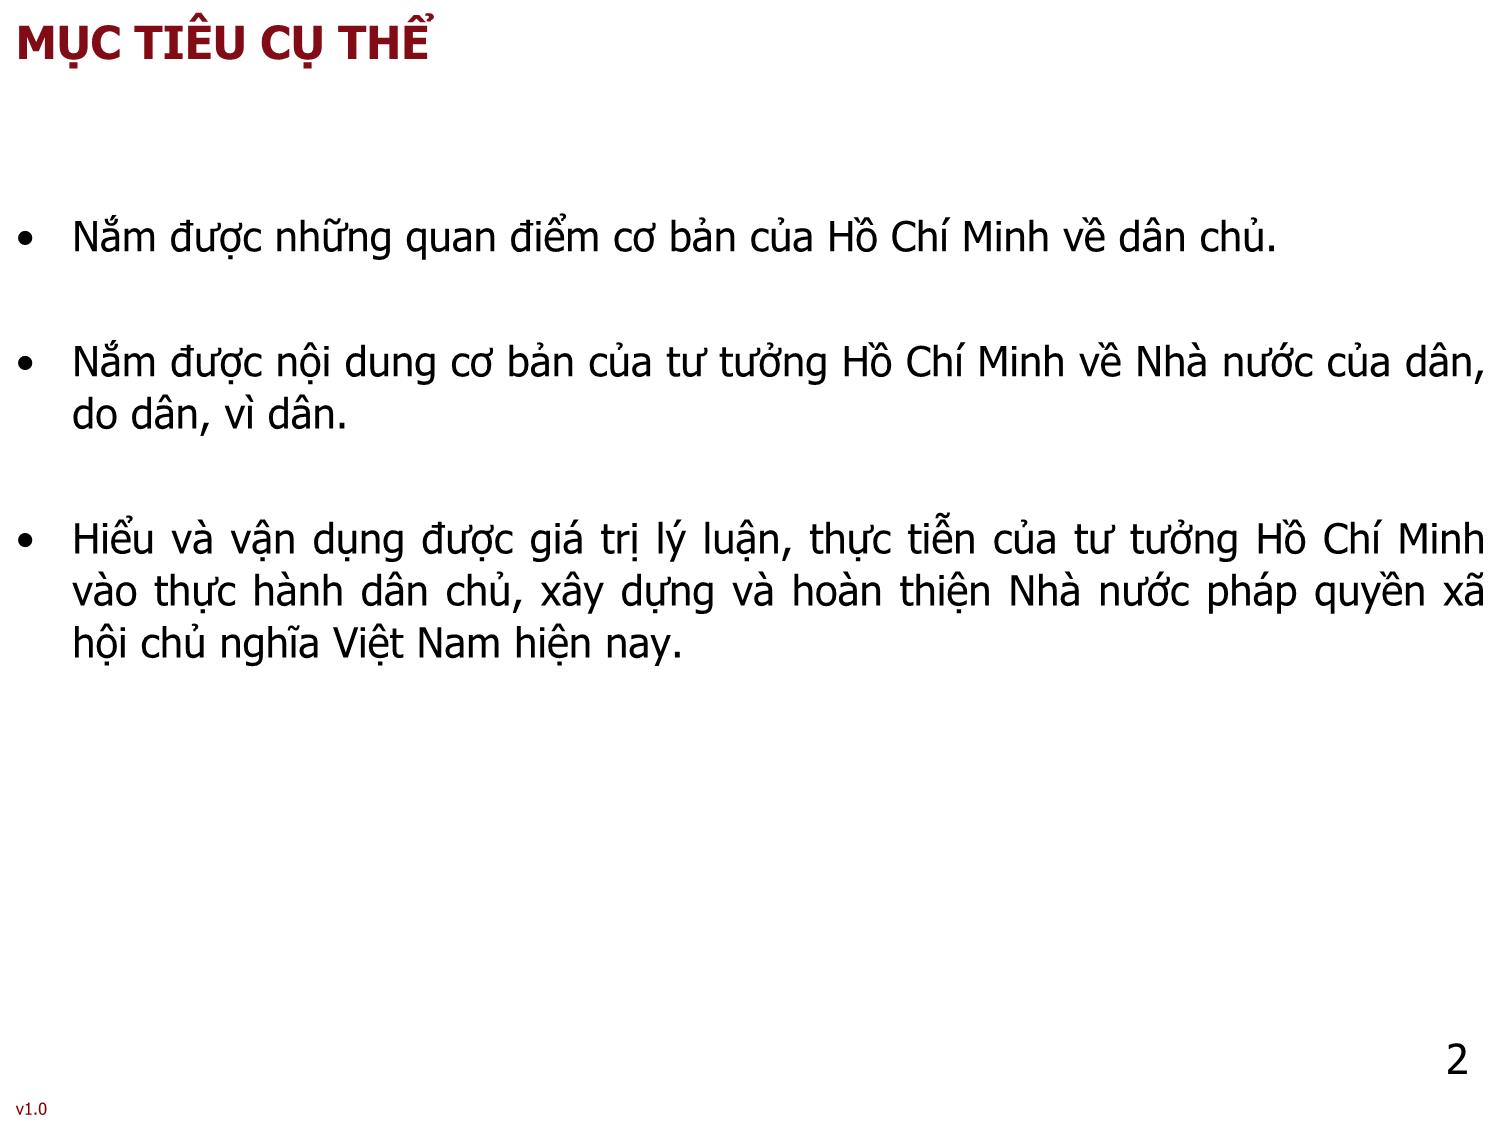 Bài giảng Tư tưởng Hồ Chí Minh - Bài 6: Tư tưởng Hồ Chí Minh về dân chủ và xây dựng nhà nước của dân, do dân, vì dân - Phạm Ngọc Anh trang 2